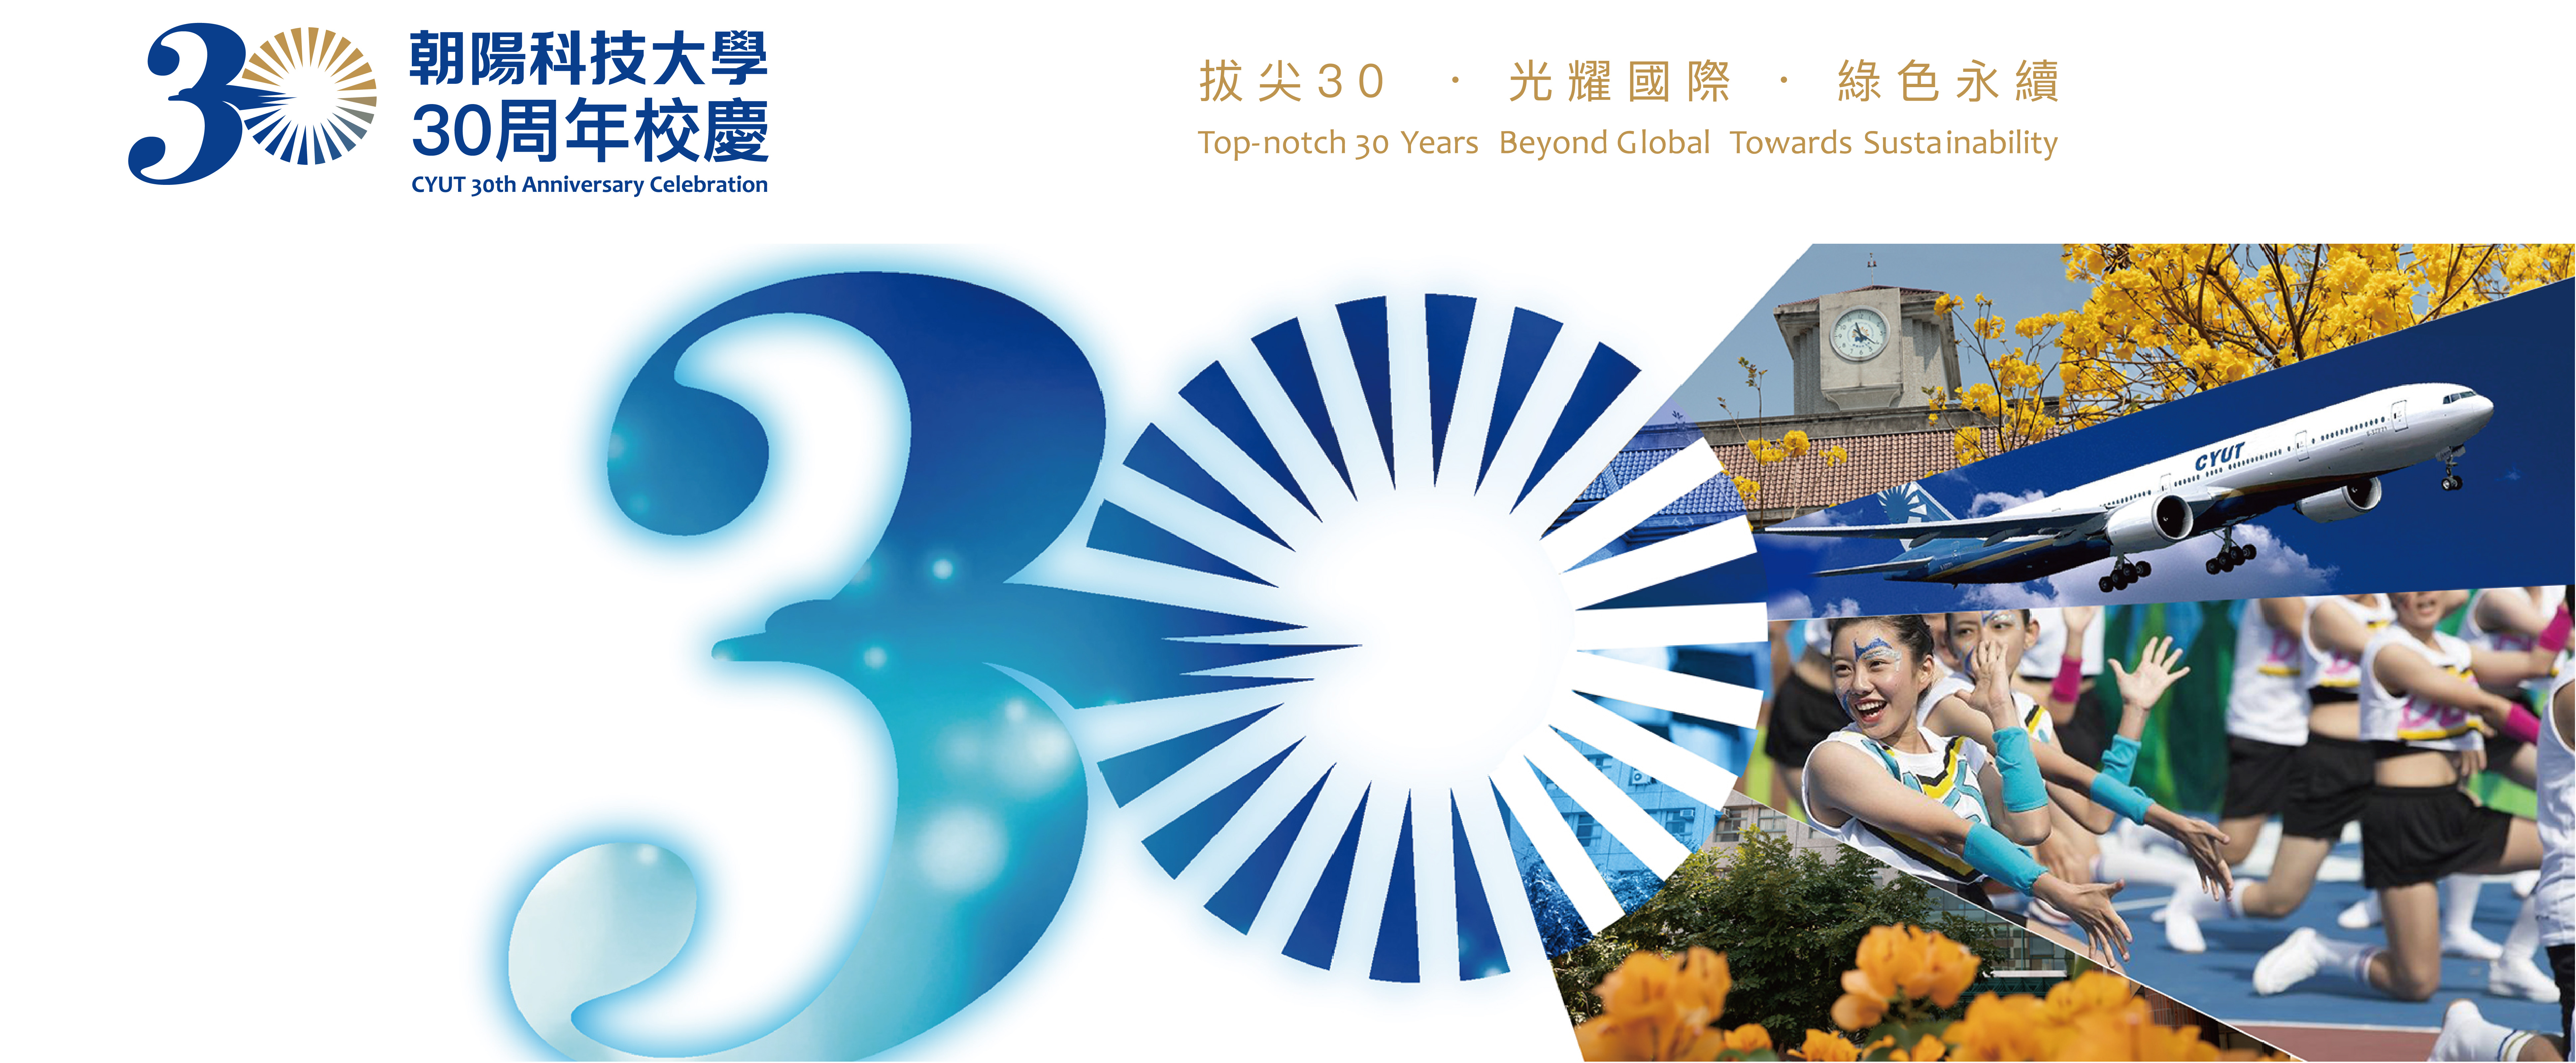 朝陽科技大學30周年校慶